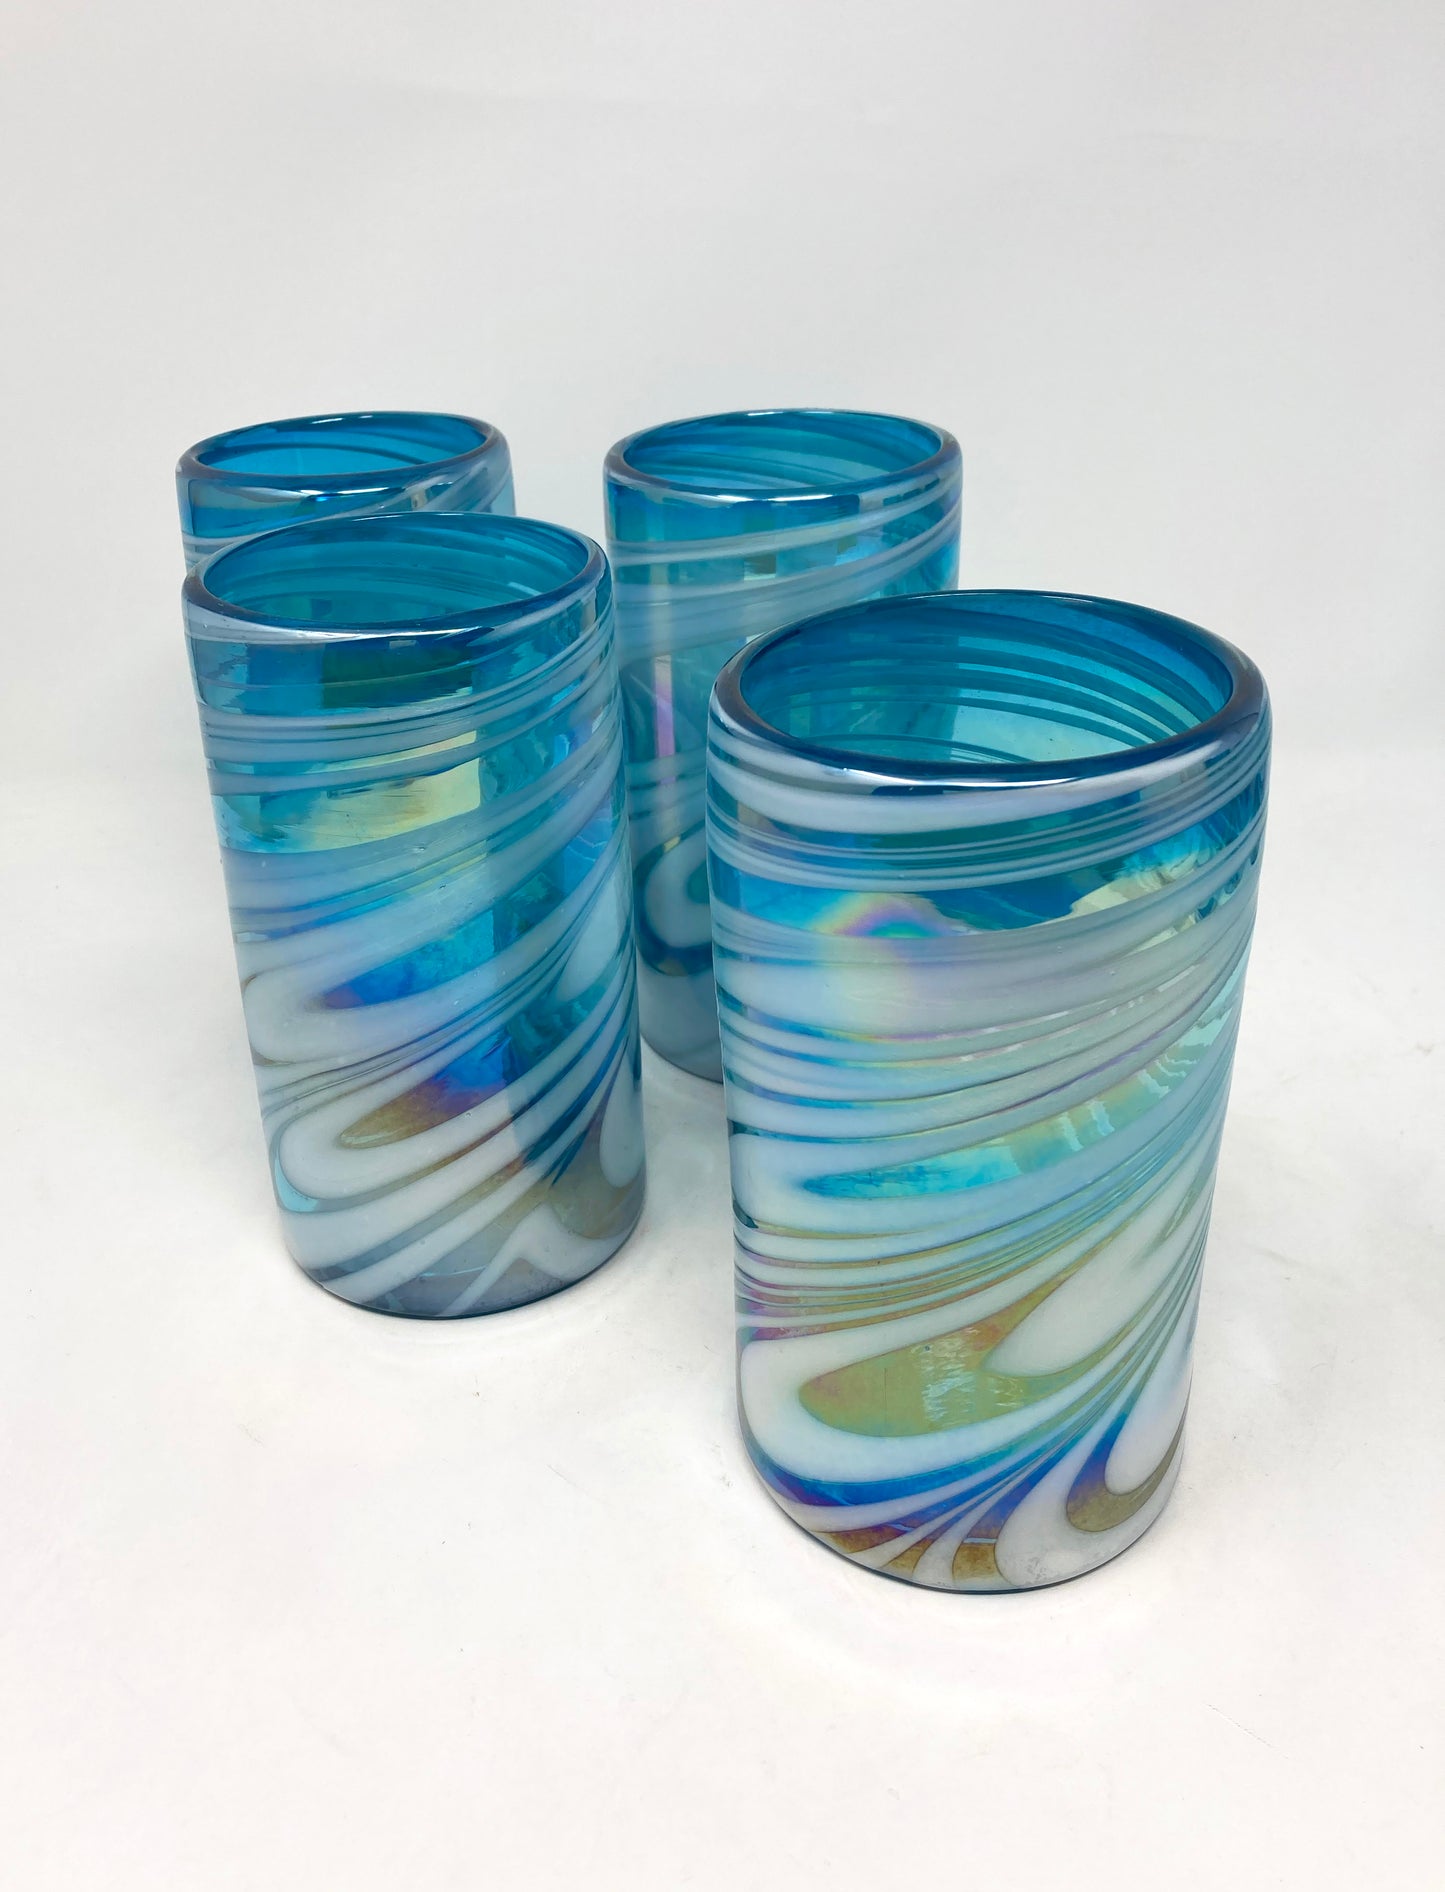 Hand Blown Water Glass - Turquoise/White Swirl Iridescent